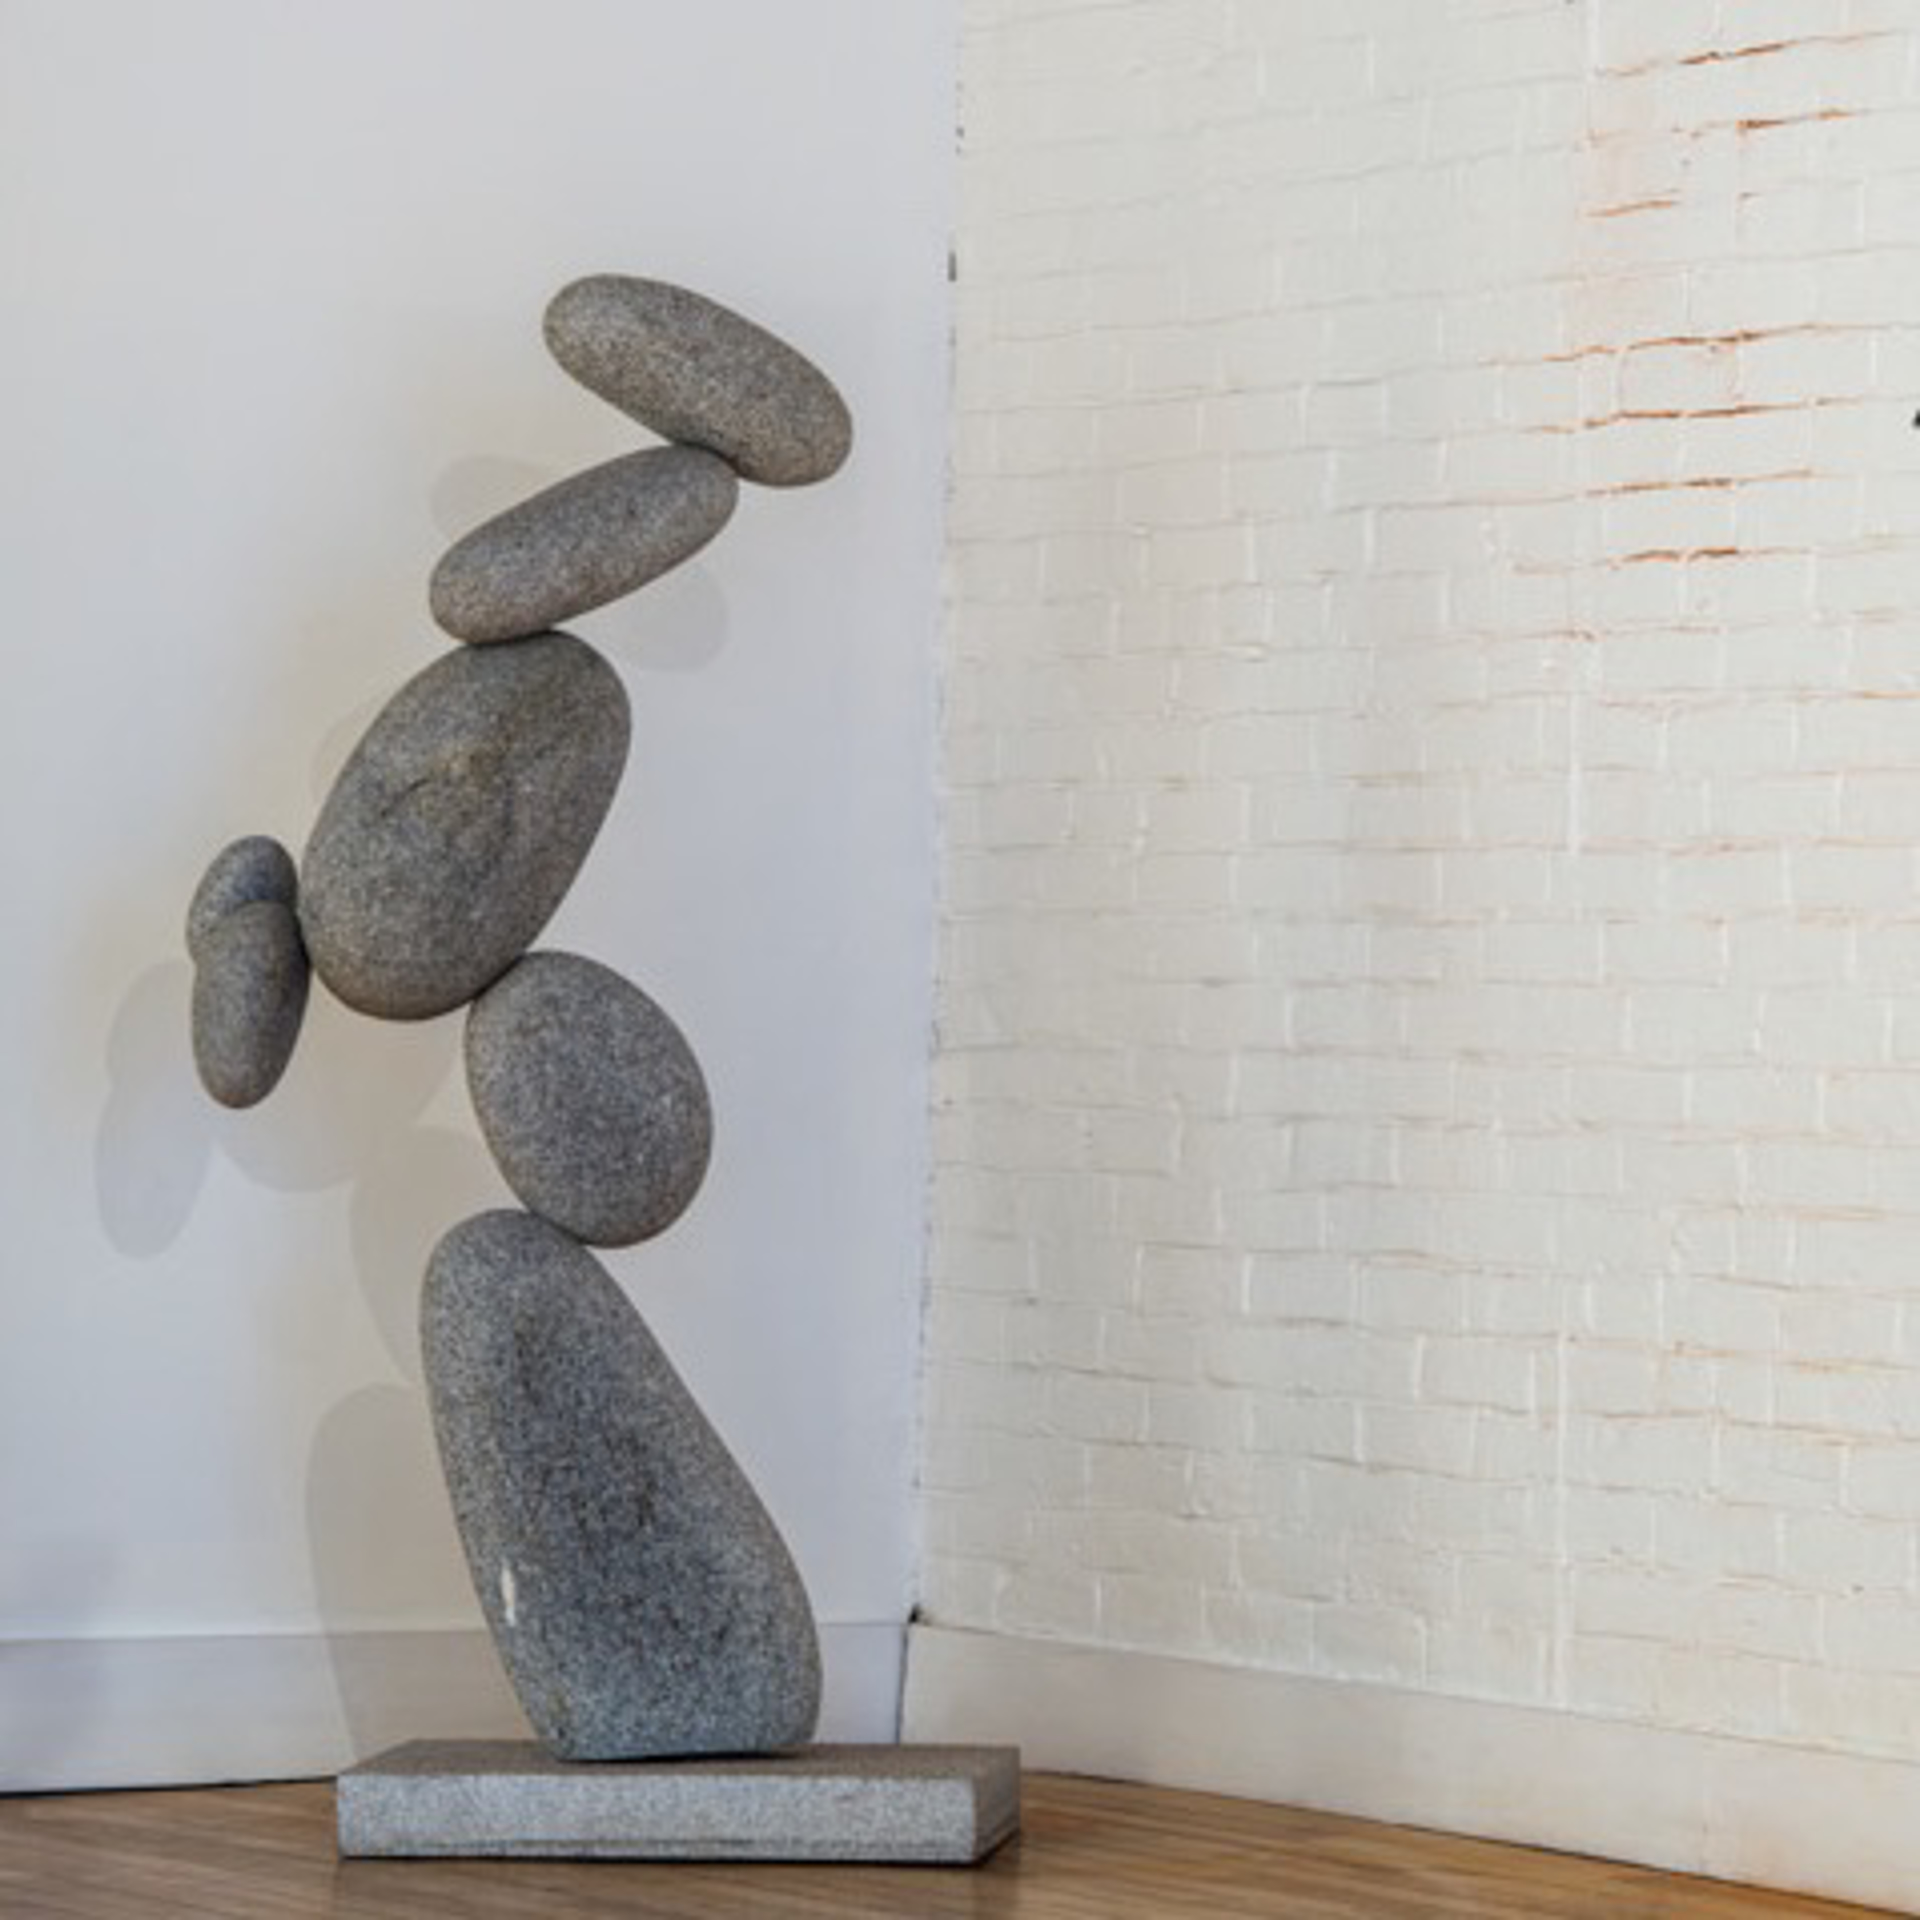 Counterbalance I by David Moser